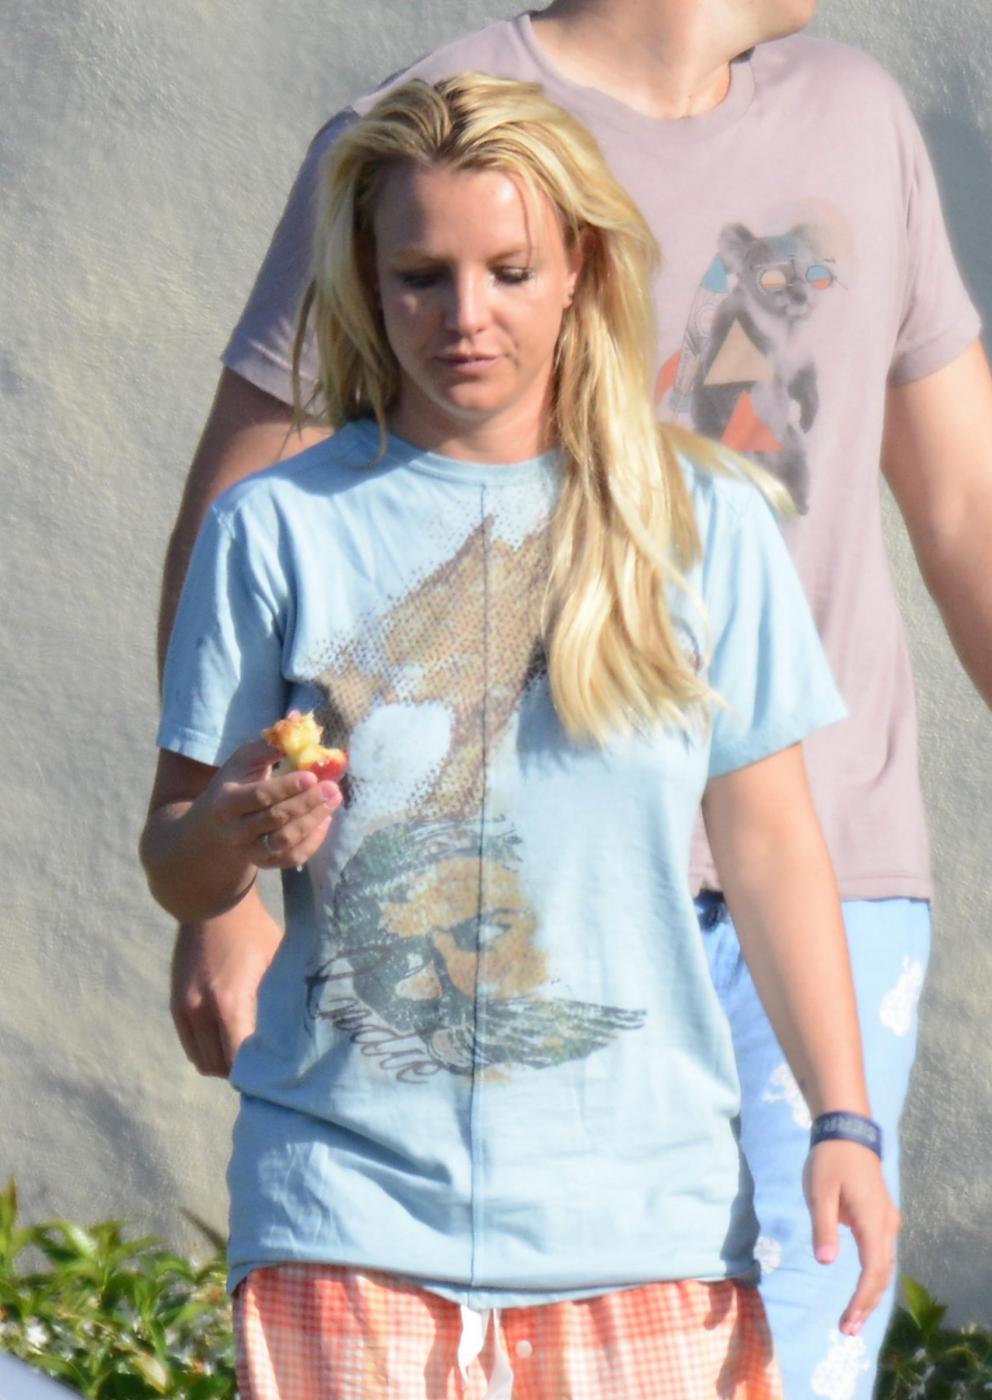 Britney Spears in vacanza con il fidanzato David Lucado02